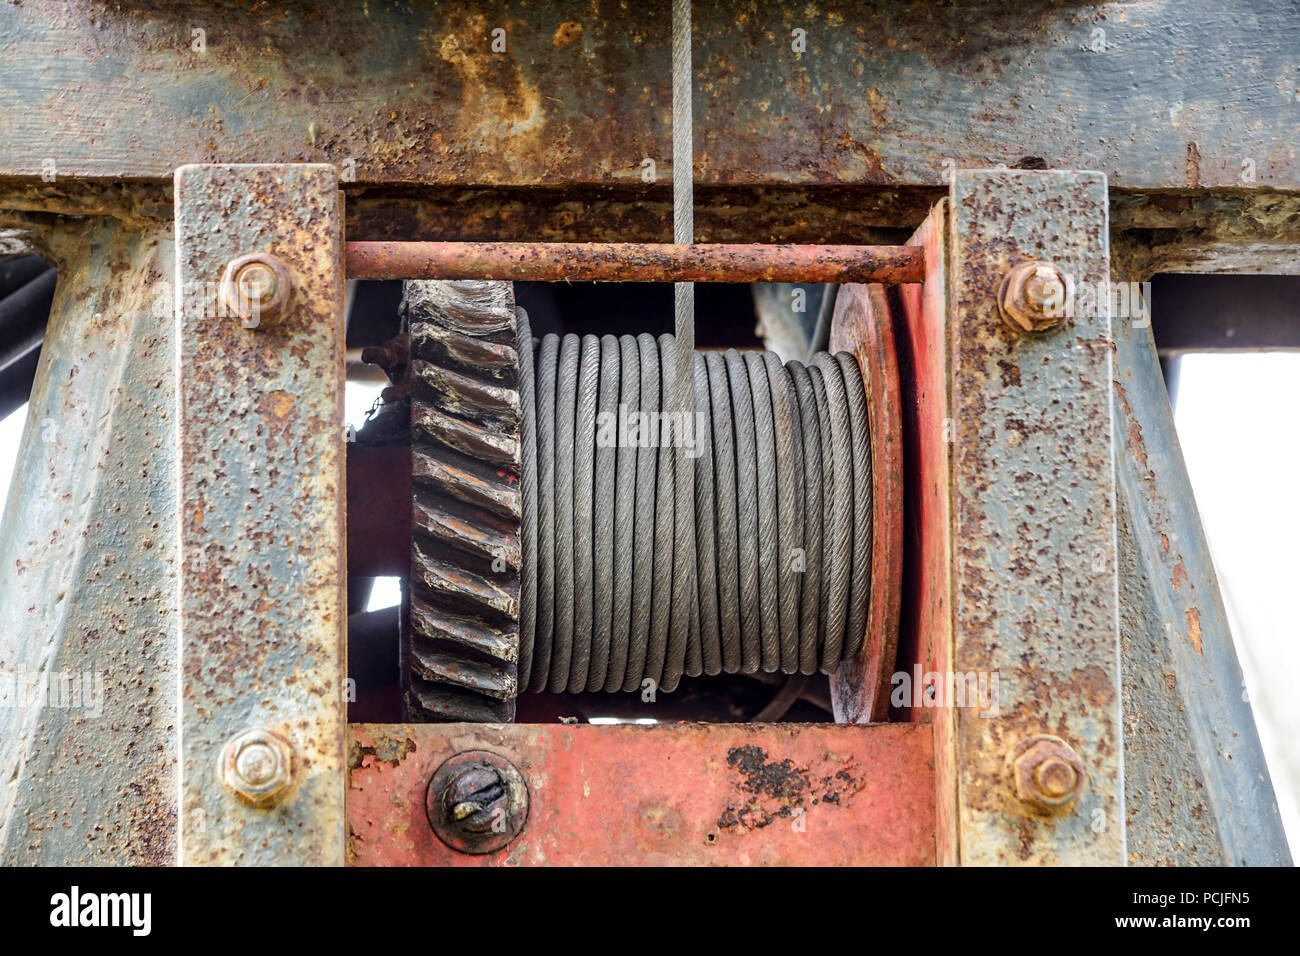 Drahtseil Schlinge oder Kabel Schlinge auf dem Kran Haspel drum oder Winde Rolle der Kran das Anheben der Maschine in der Schwerindustrie Stockfoto